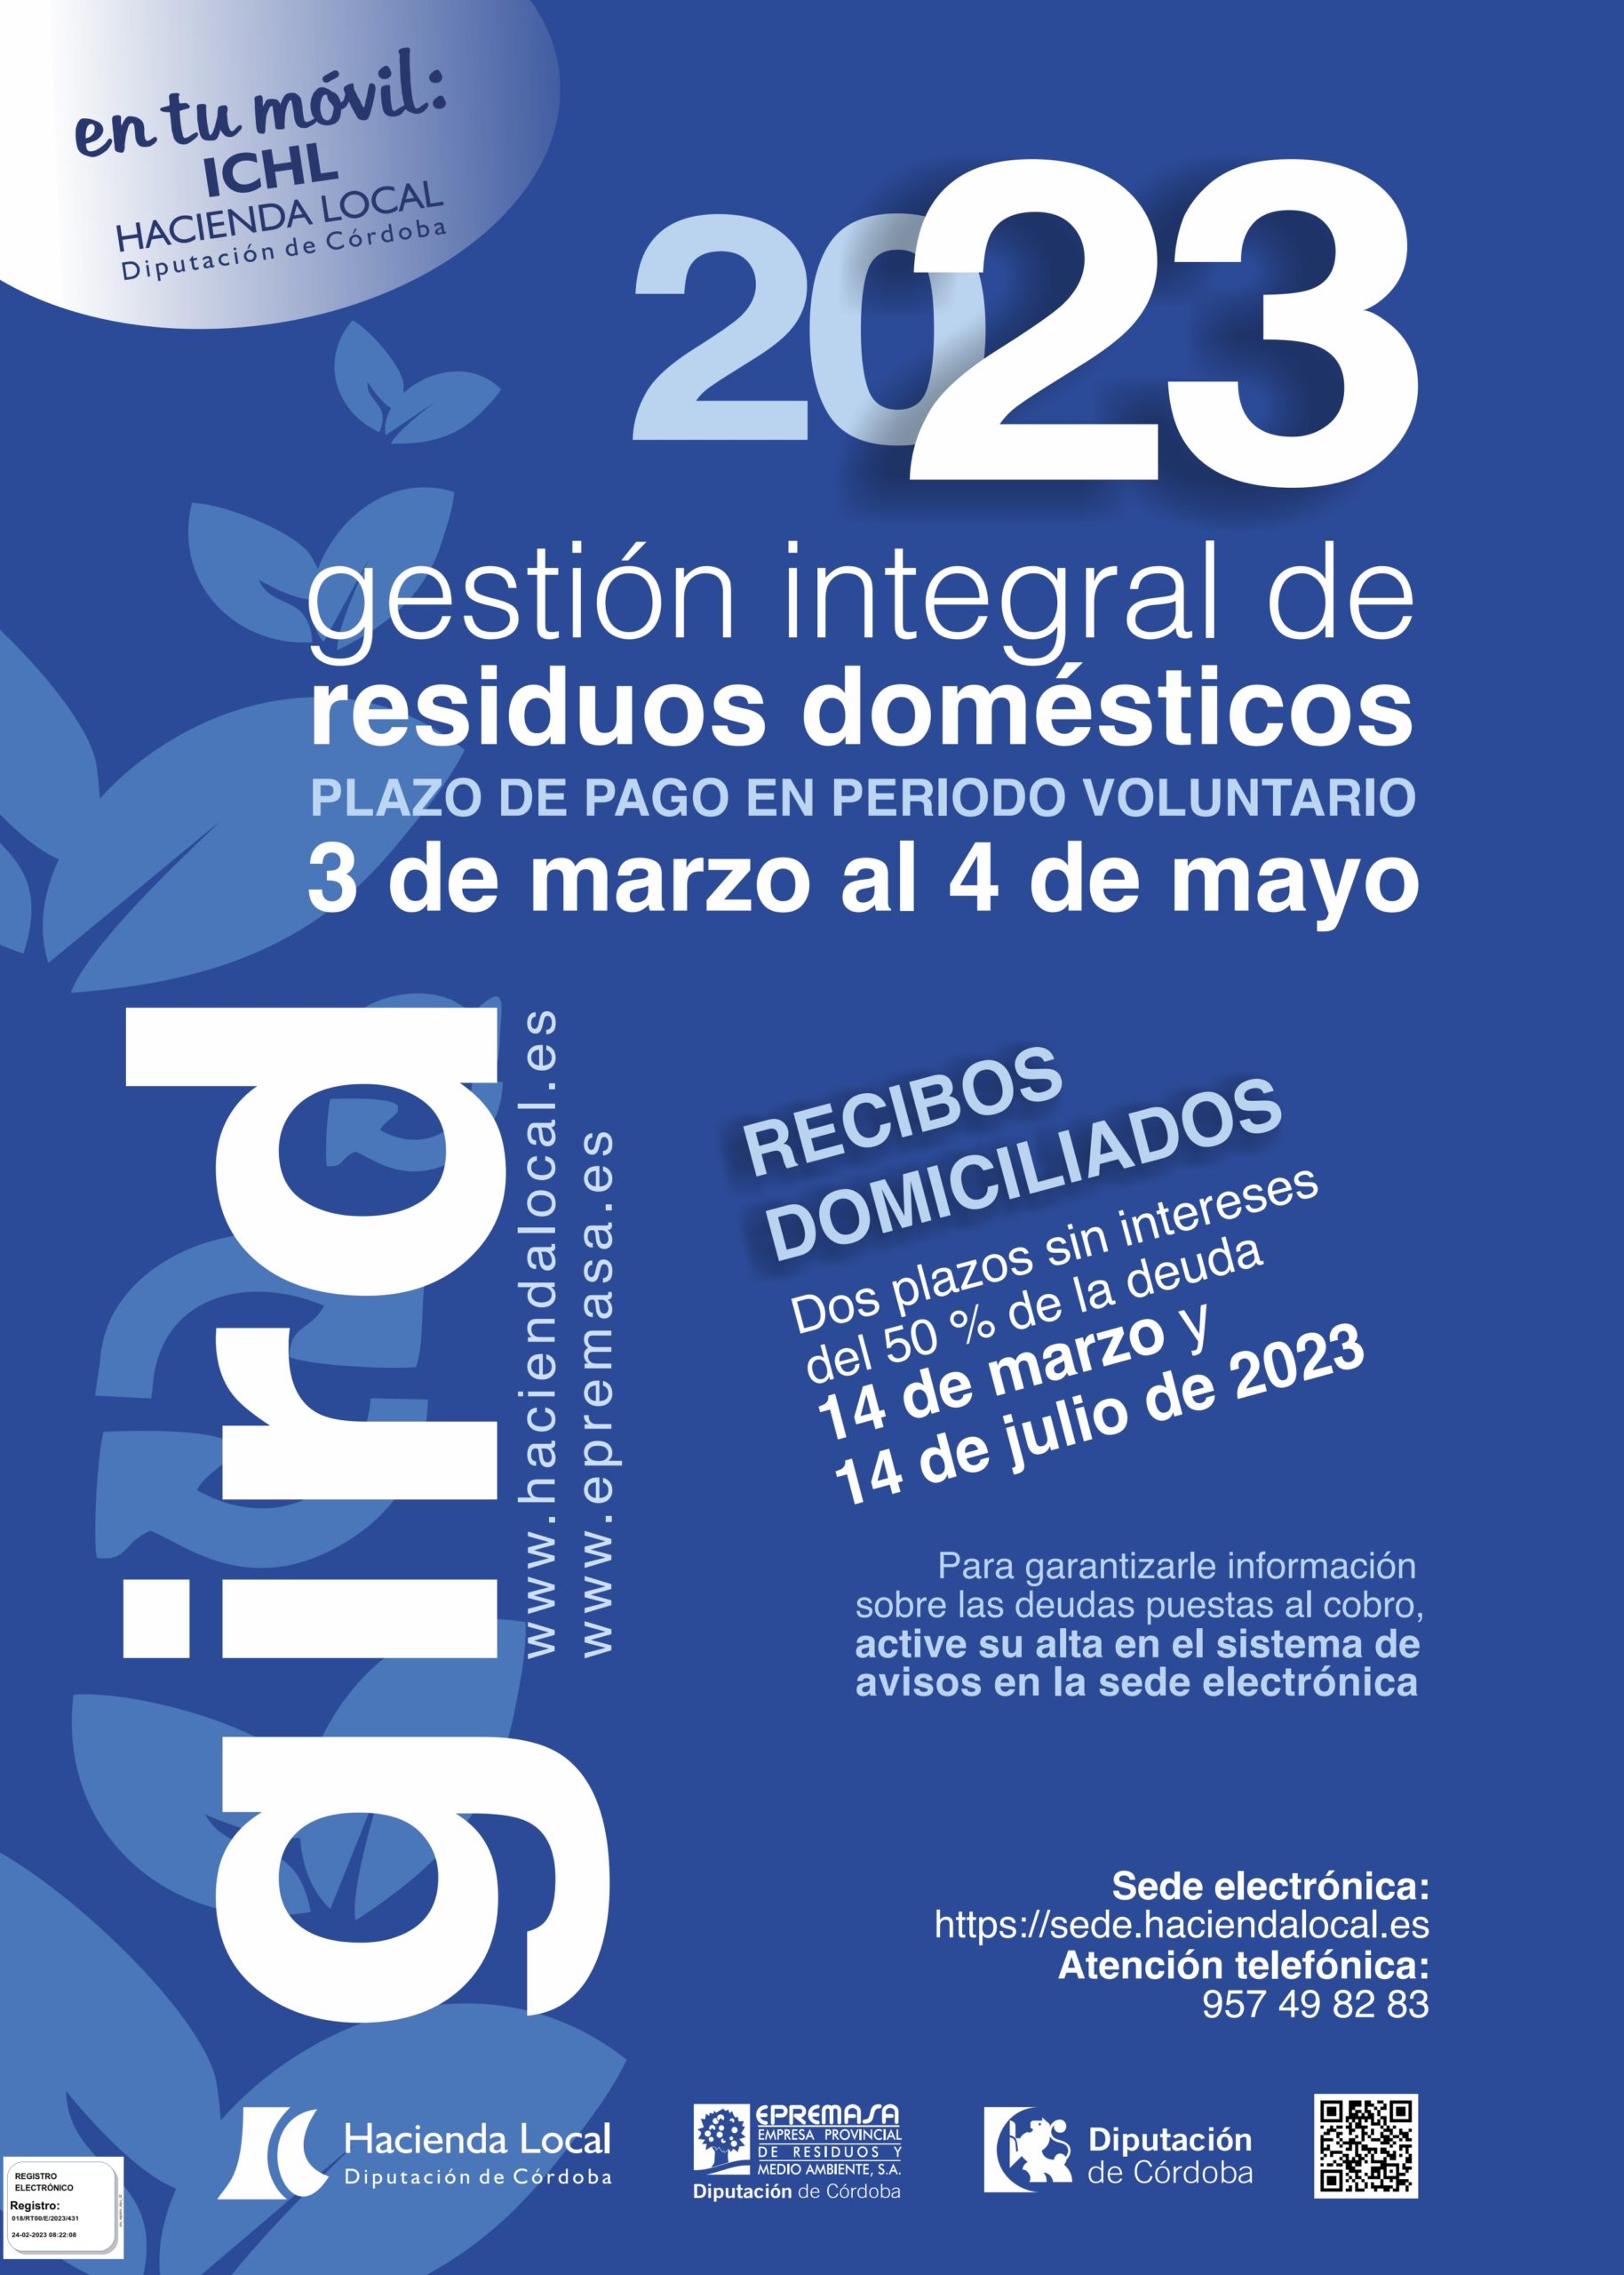 HACIENDA LOCAL - Gestión Integral de Residuos Domésticos 2023